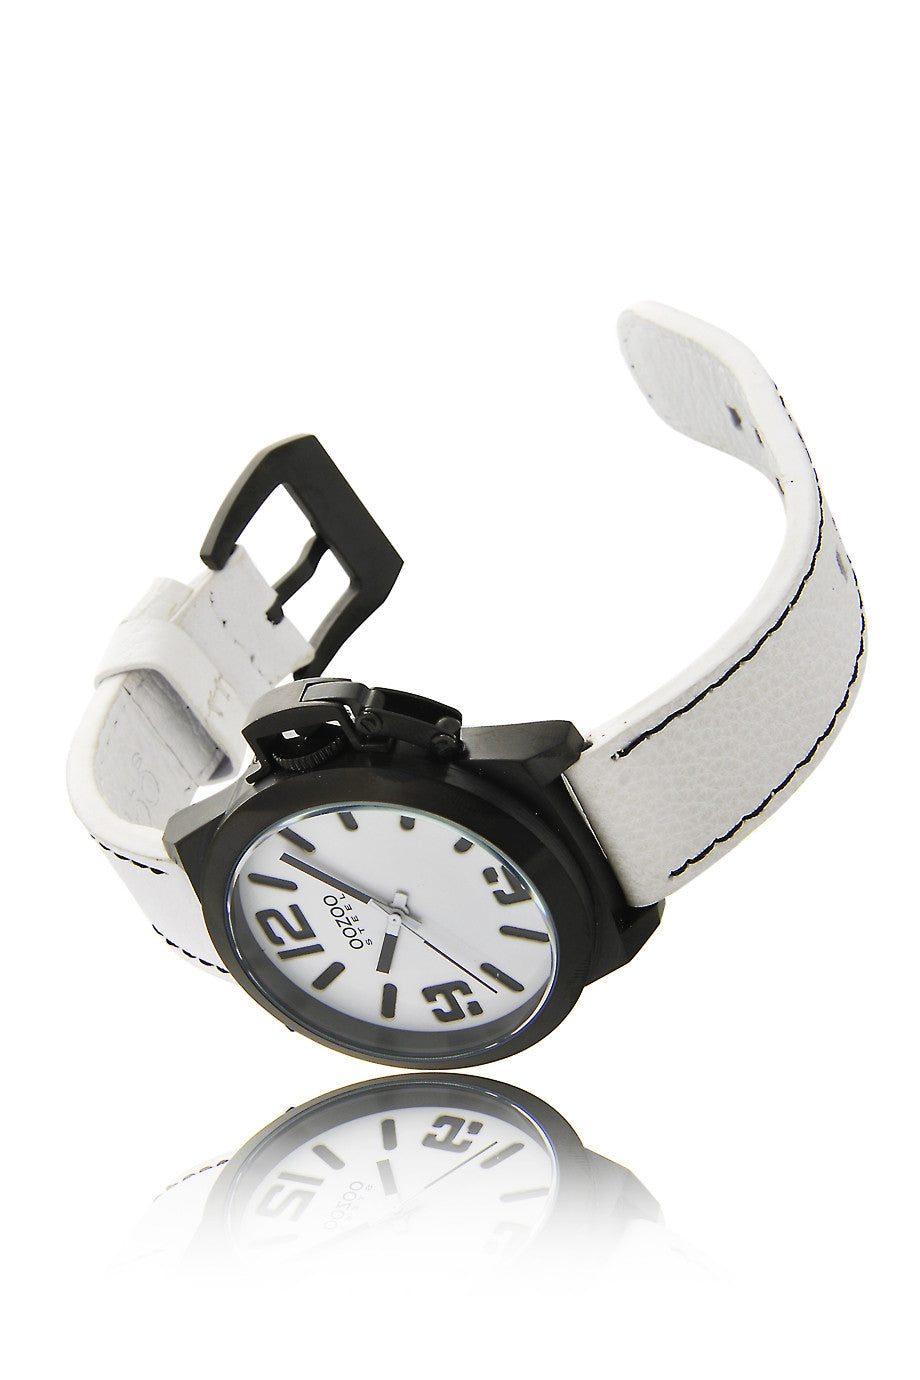 OOZOO OS112 Black White Watch